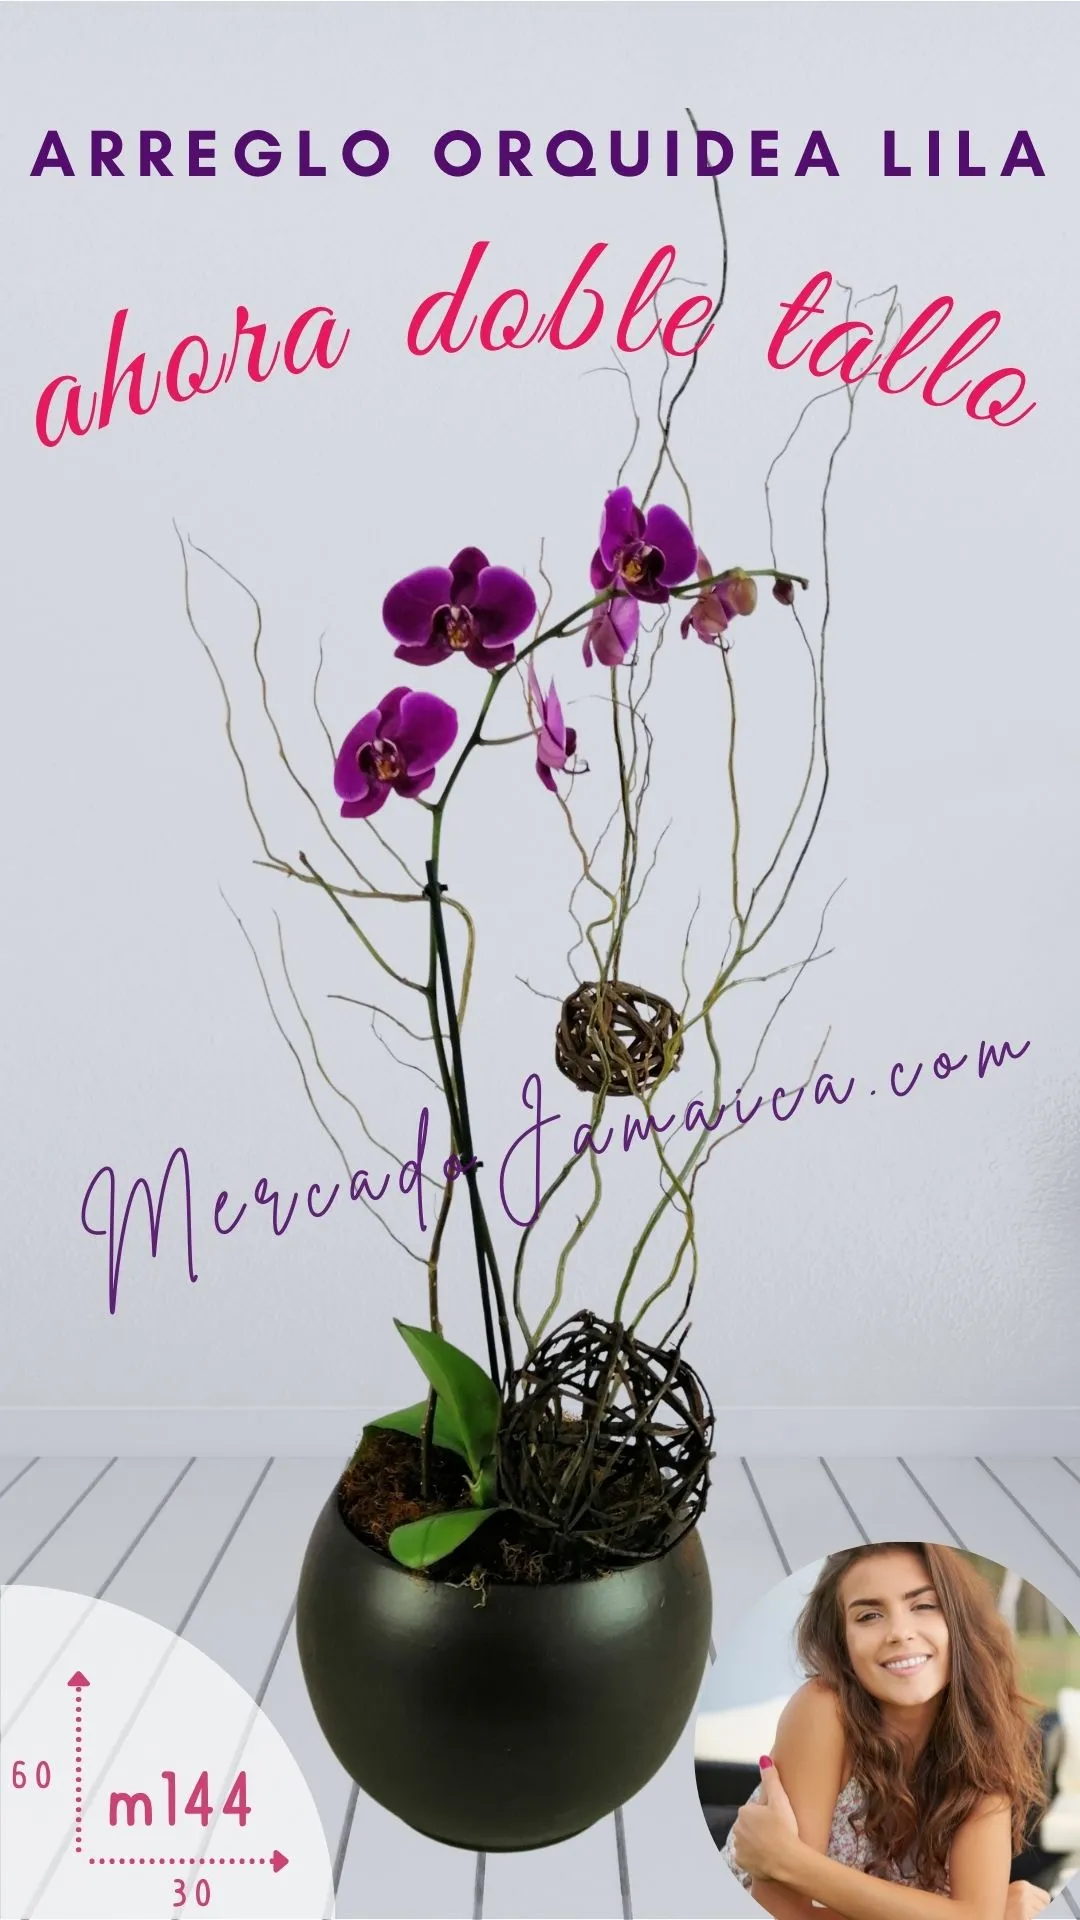 Arreglos florales orquídeas california rose !